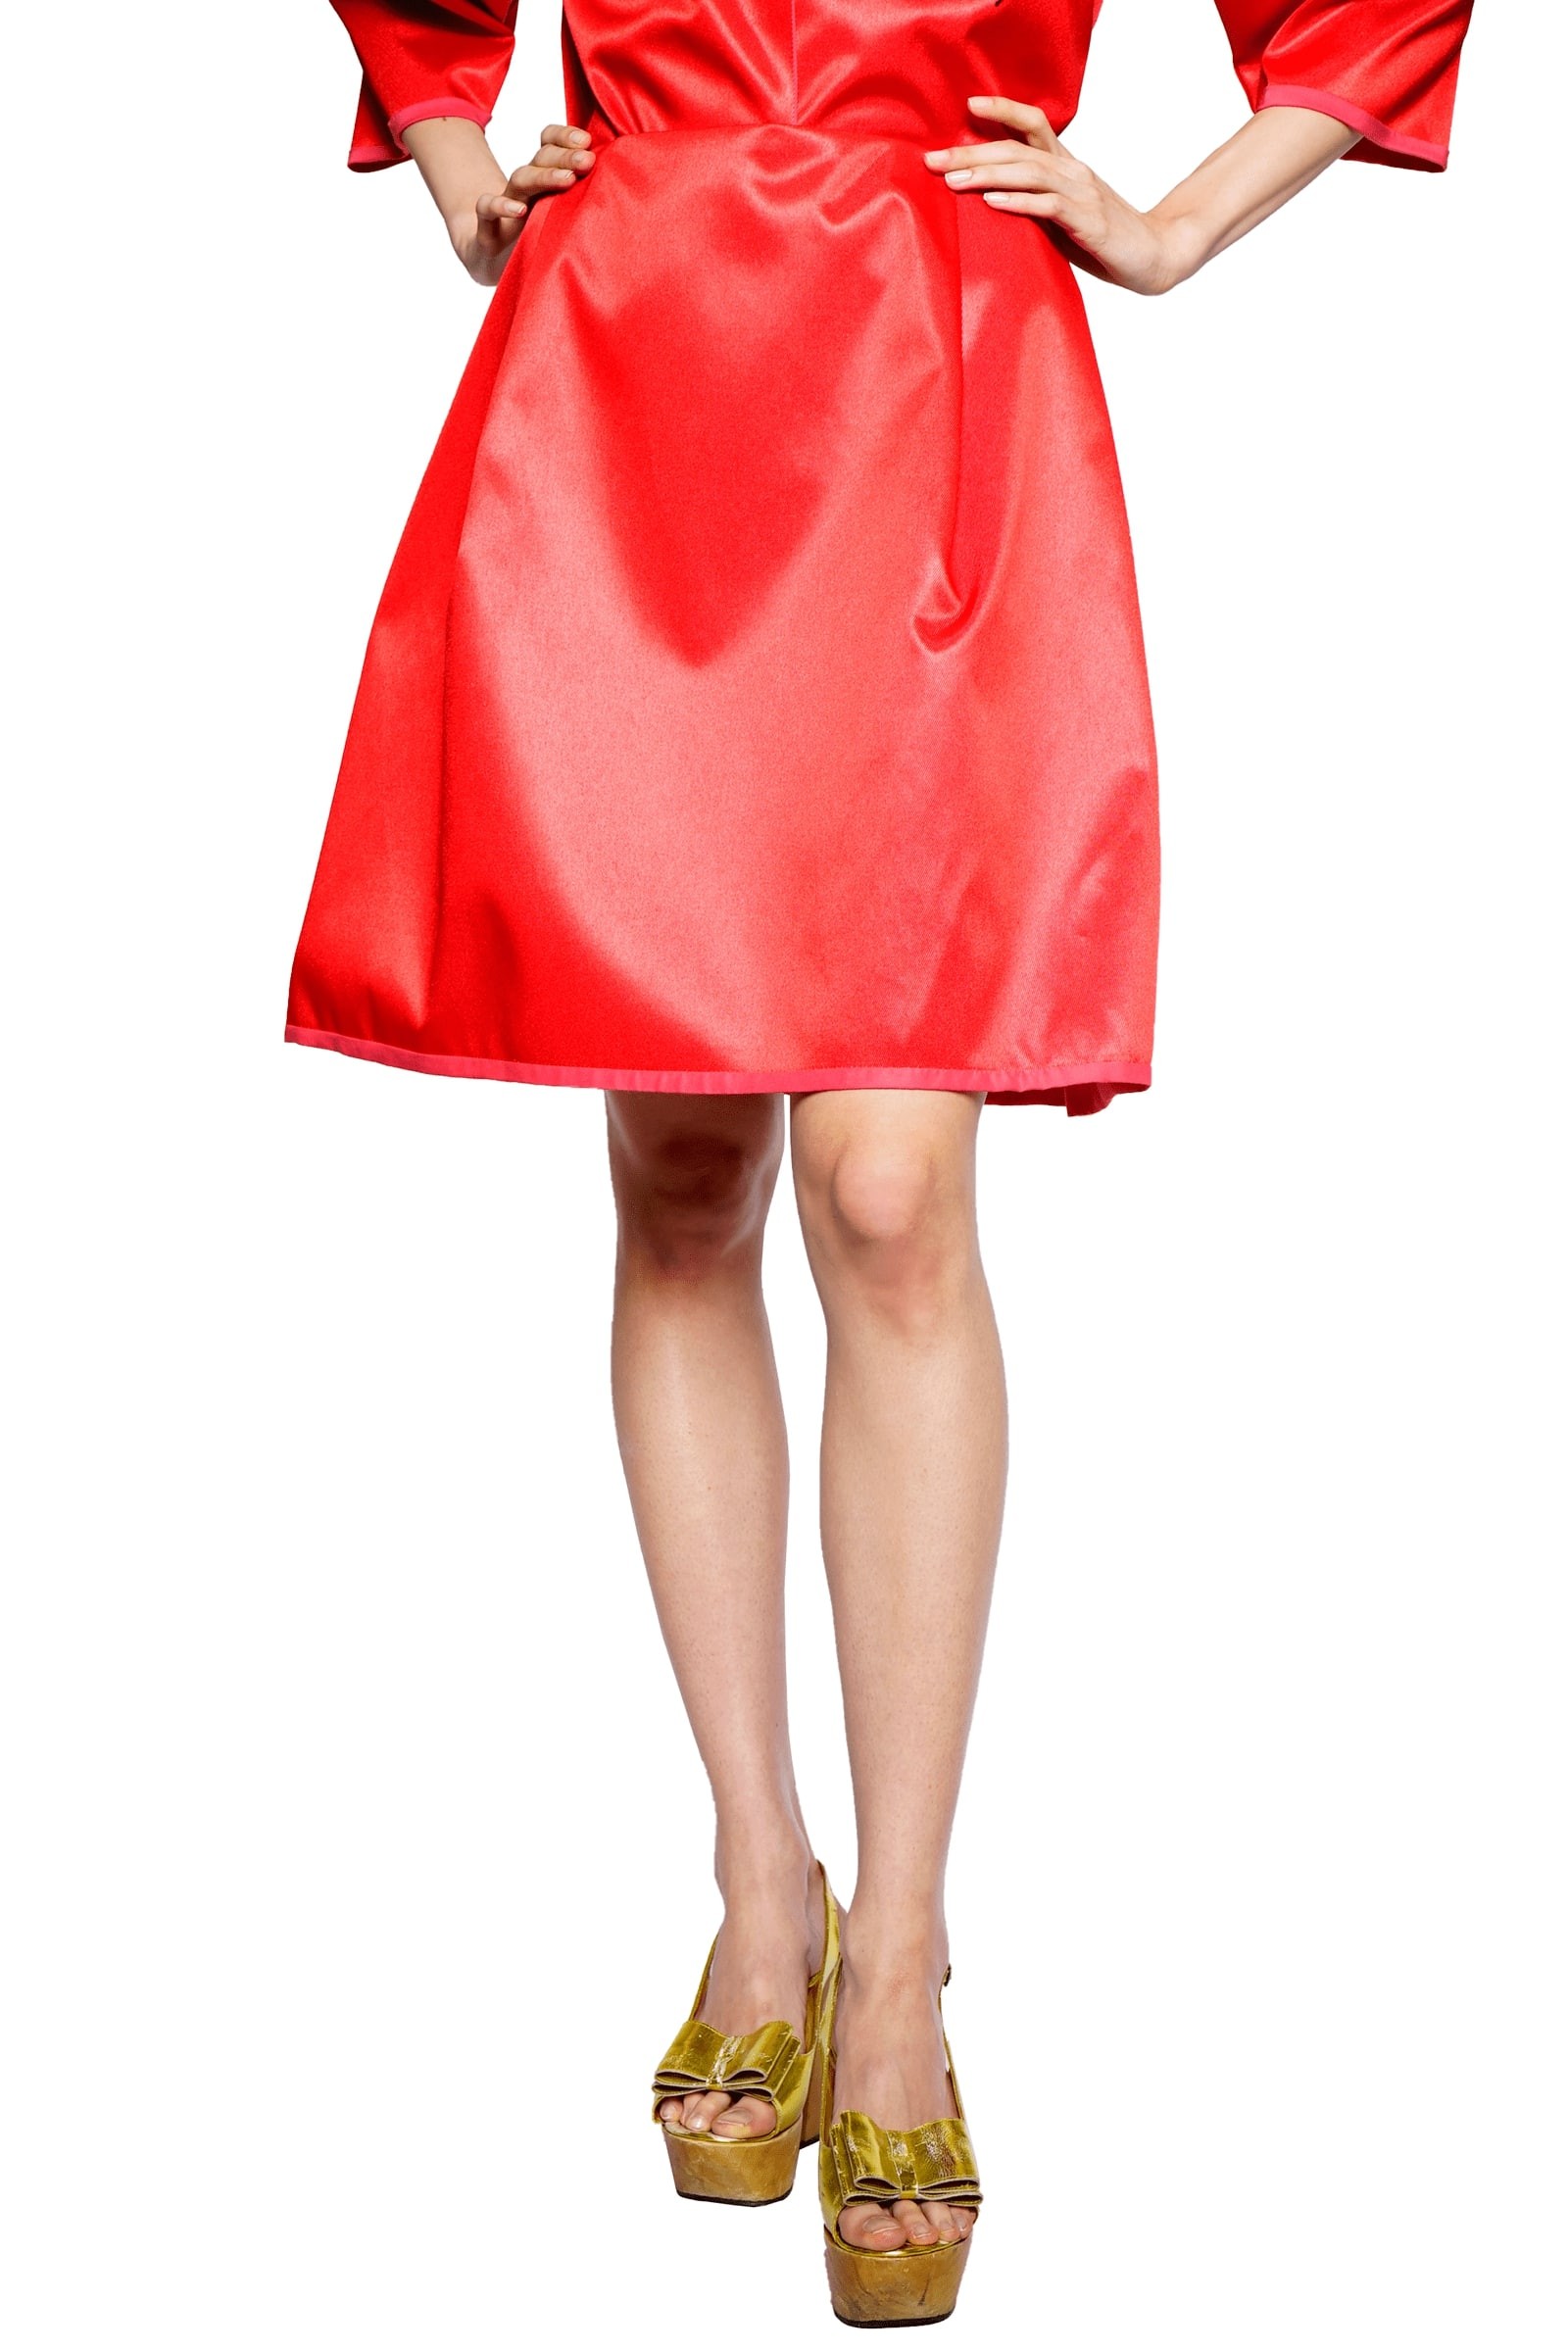 Flared red satin skirt